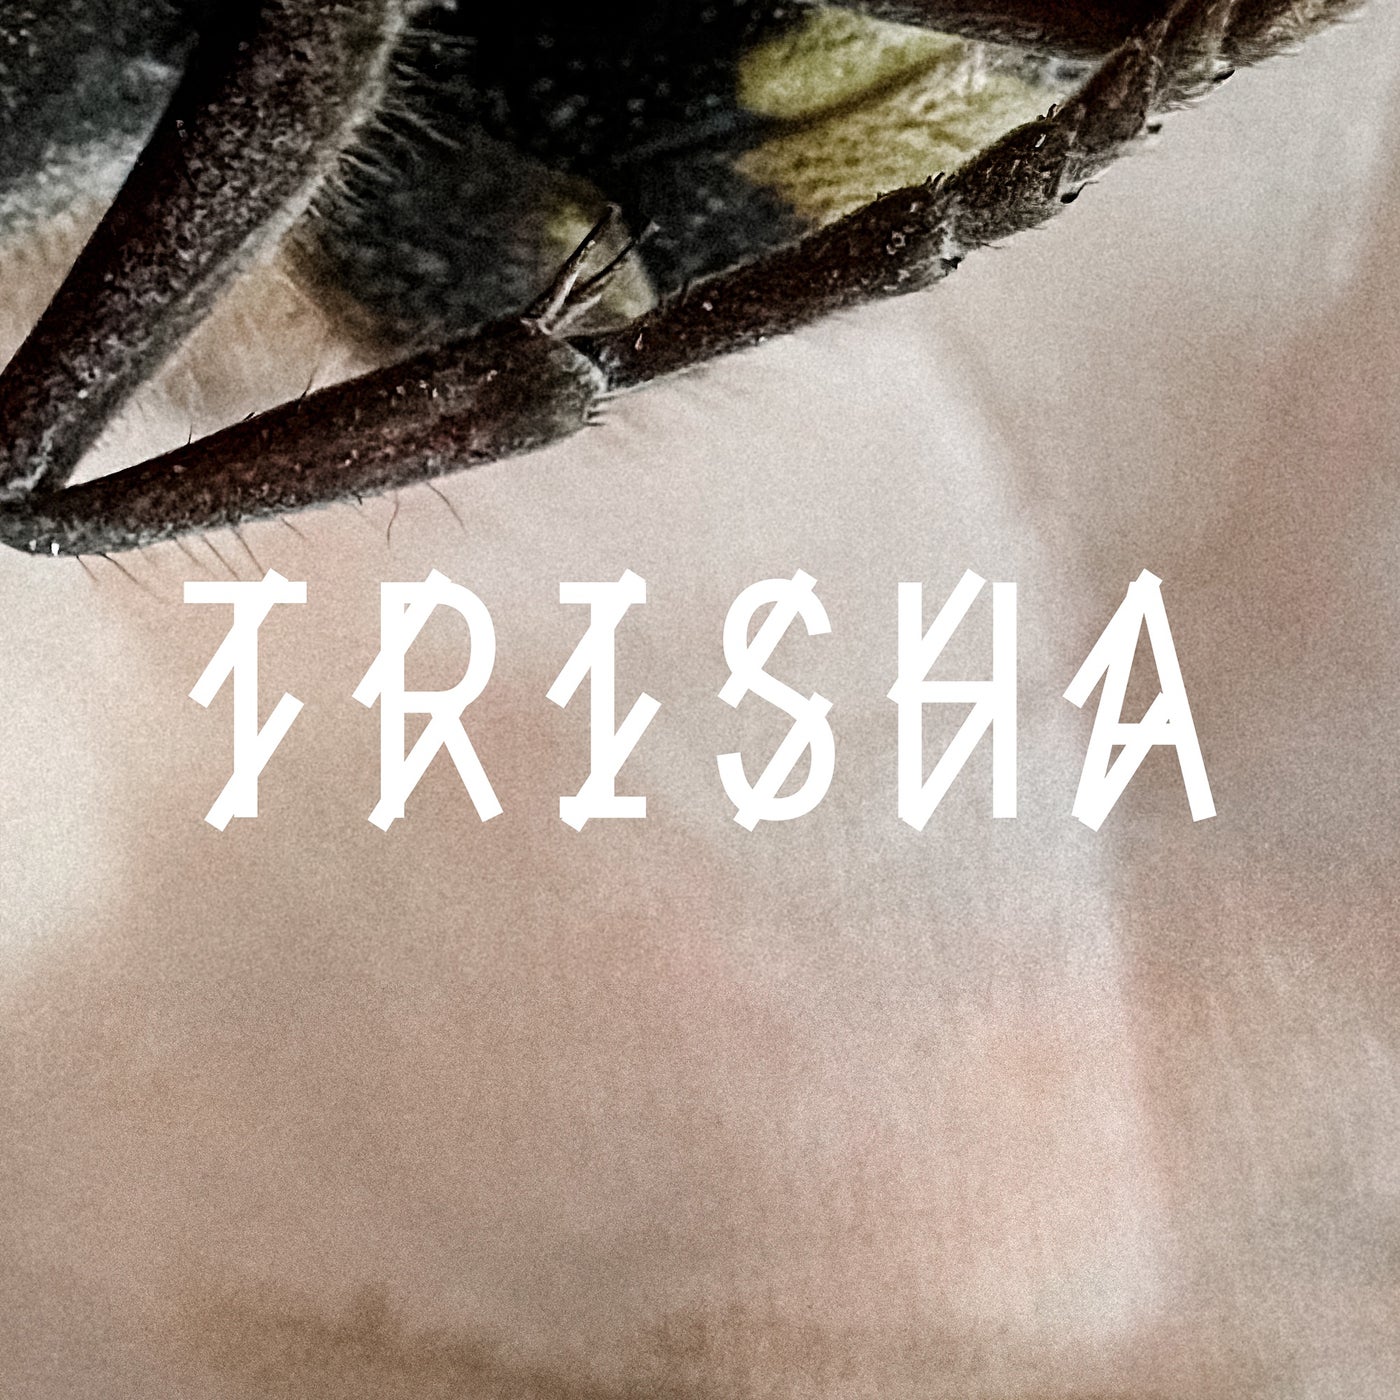 Cover - Vtss - TRISHA (Original Mix)